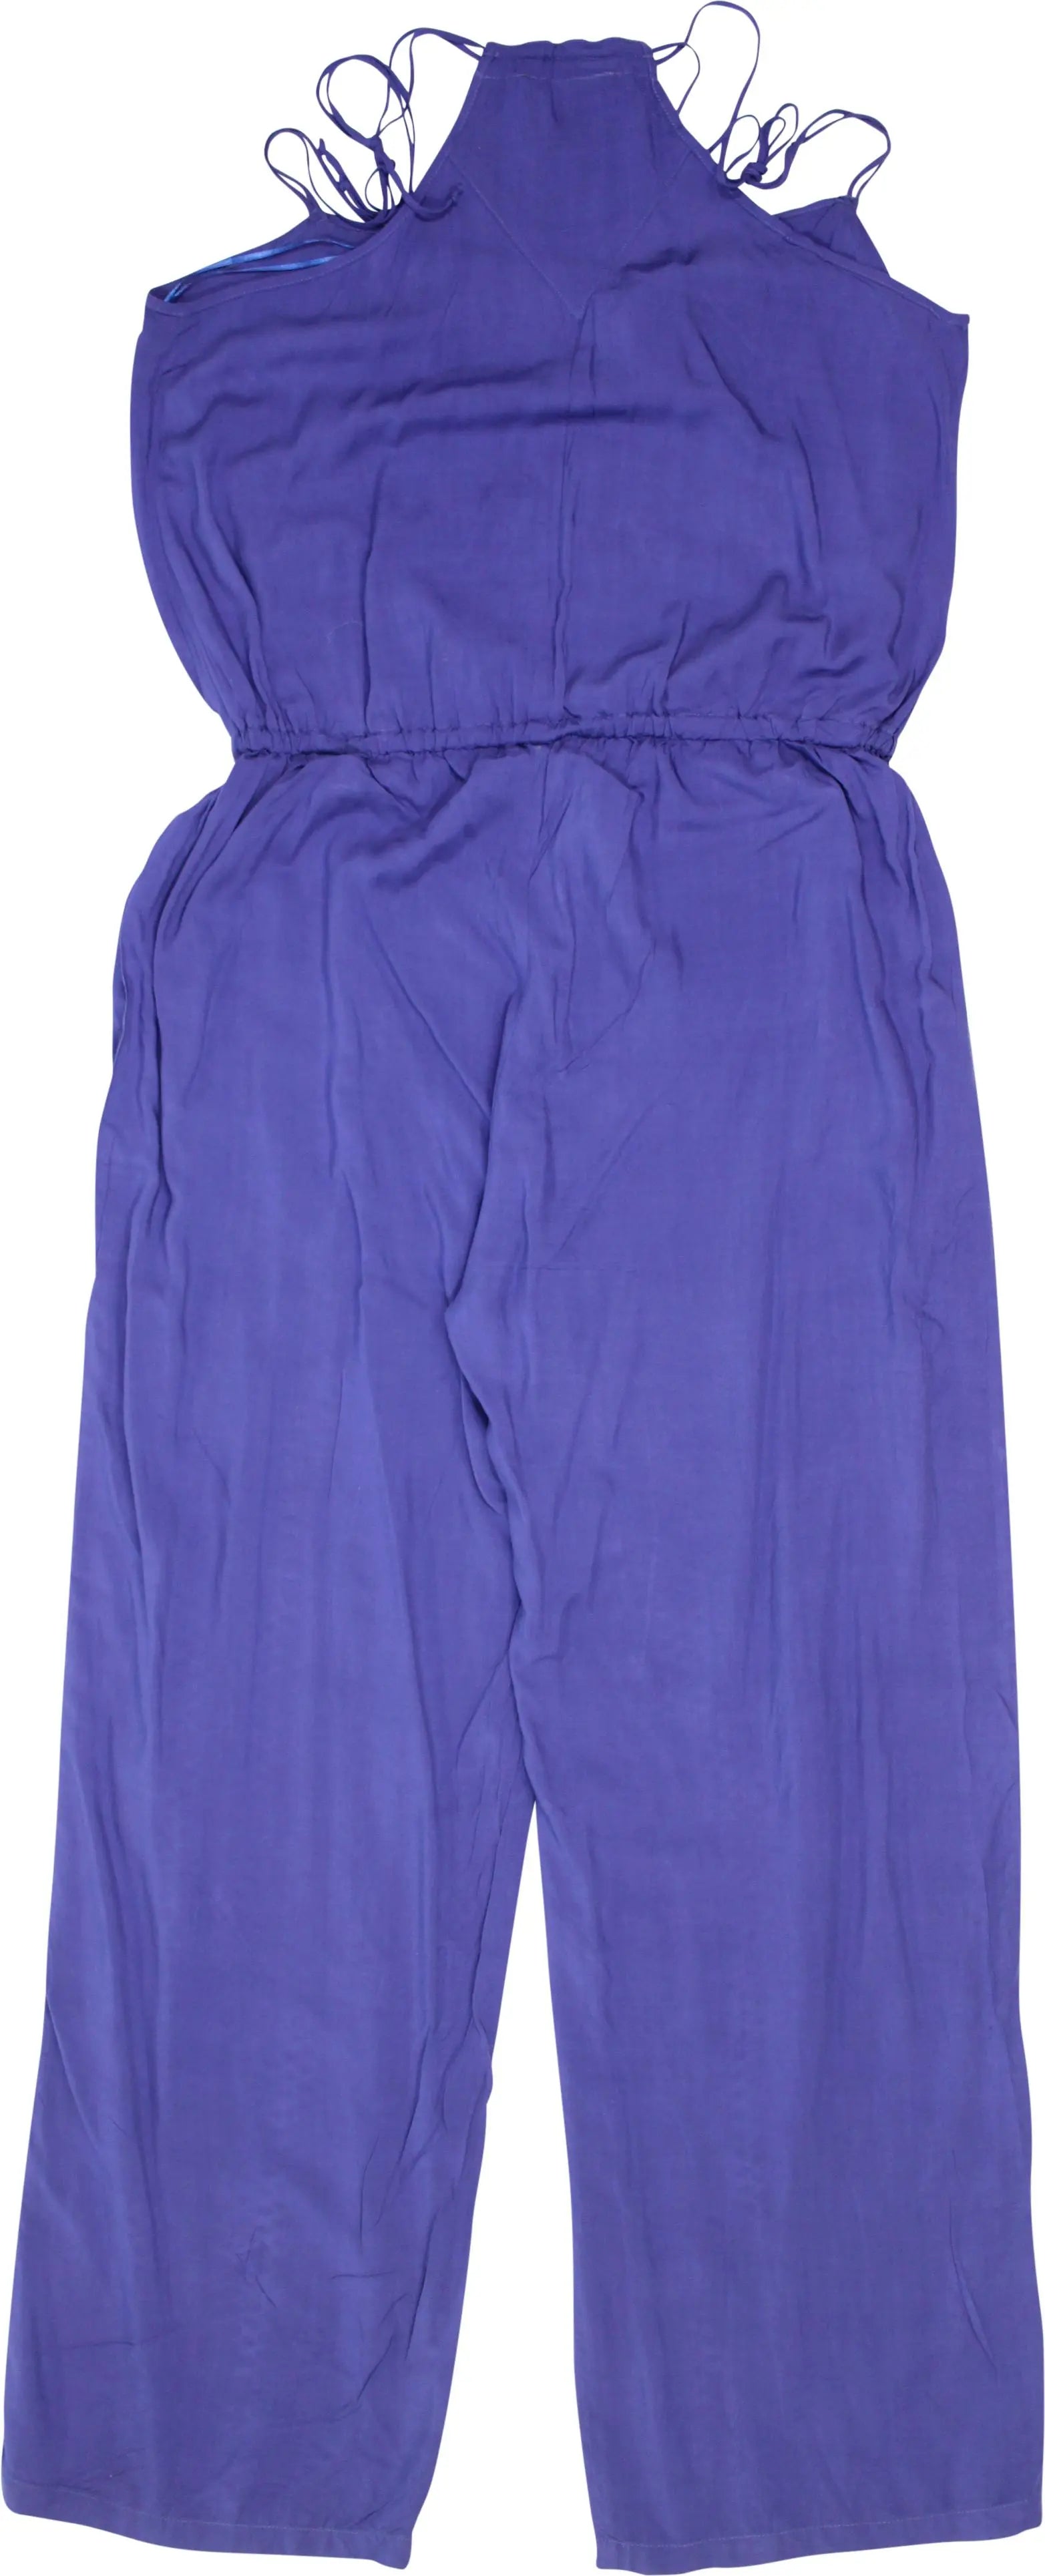 Conbipel - Jumpsuit- ThriftTale.com - Vintage and second handclothing